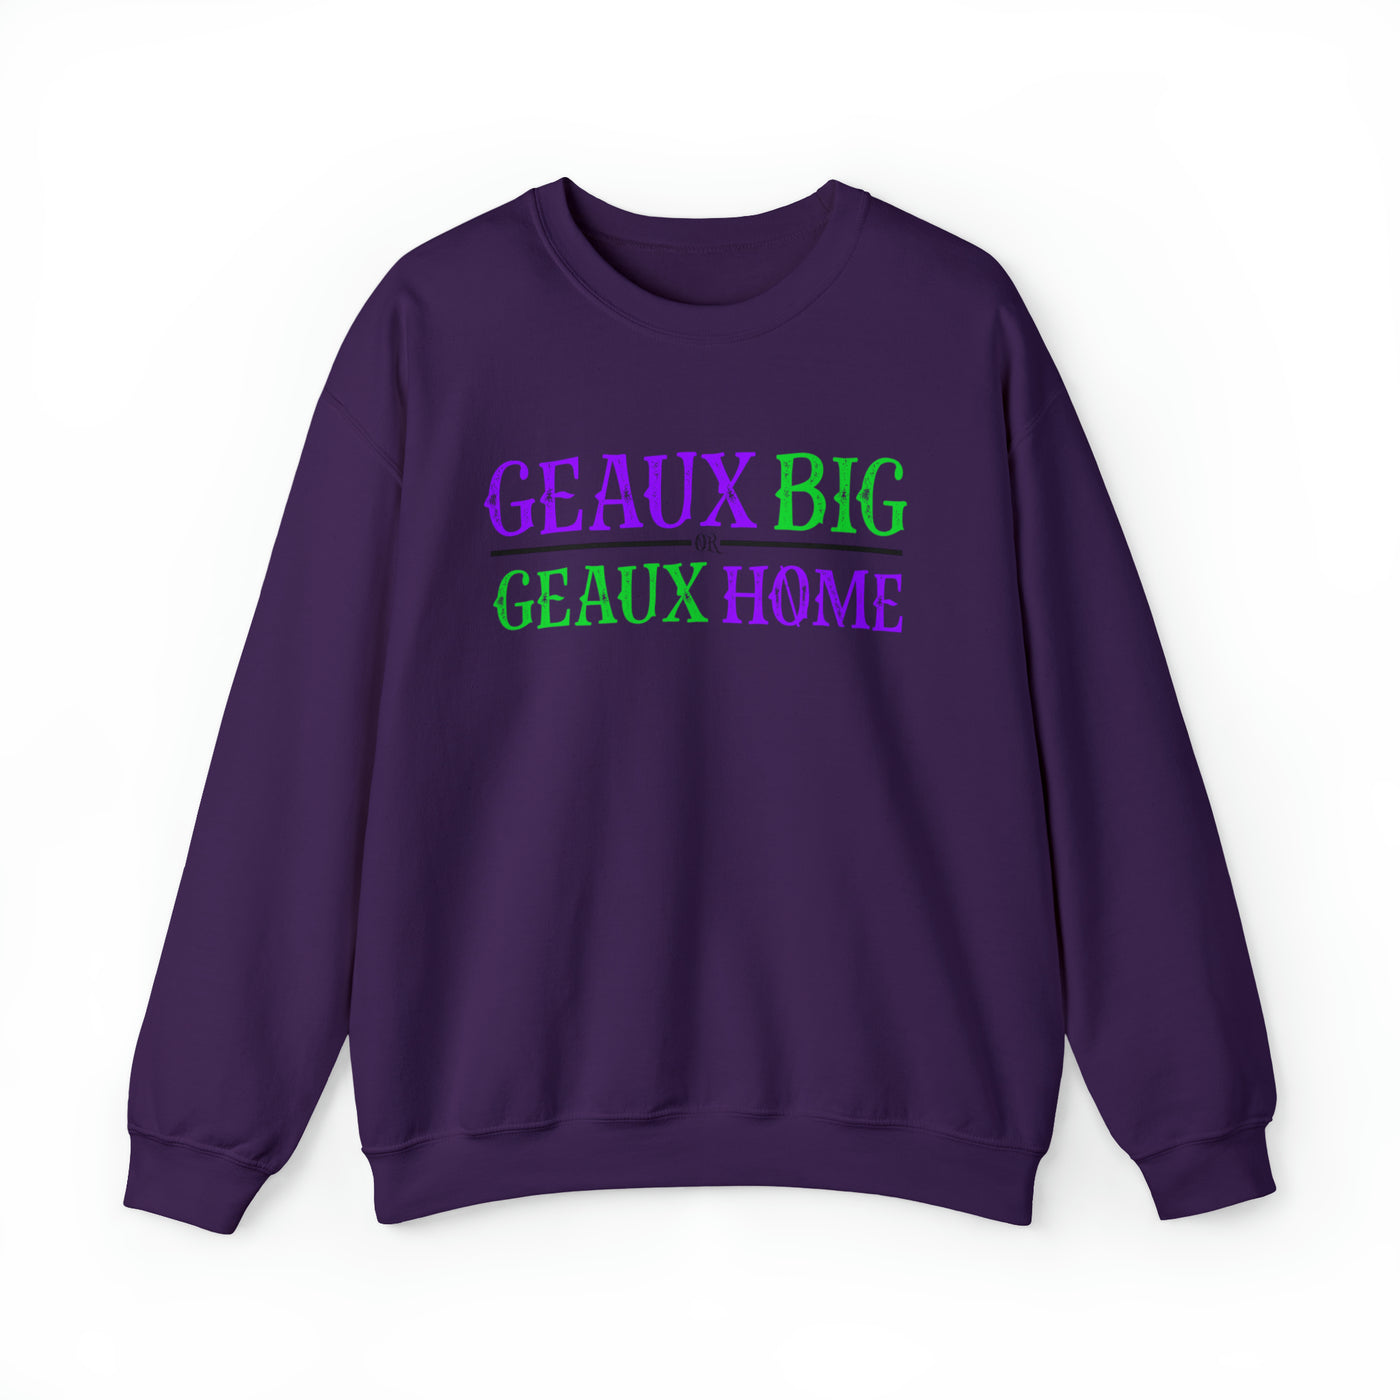 Geaux Big Crewneck Sweatshirt